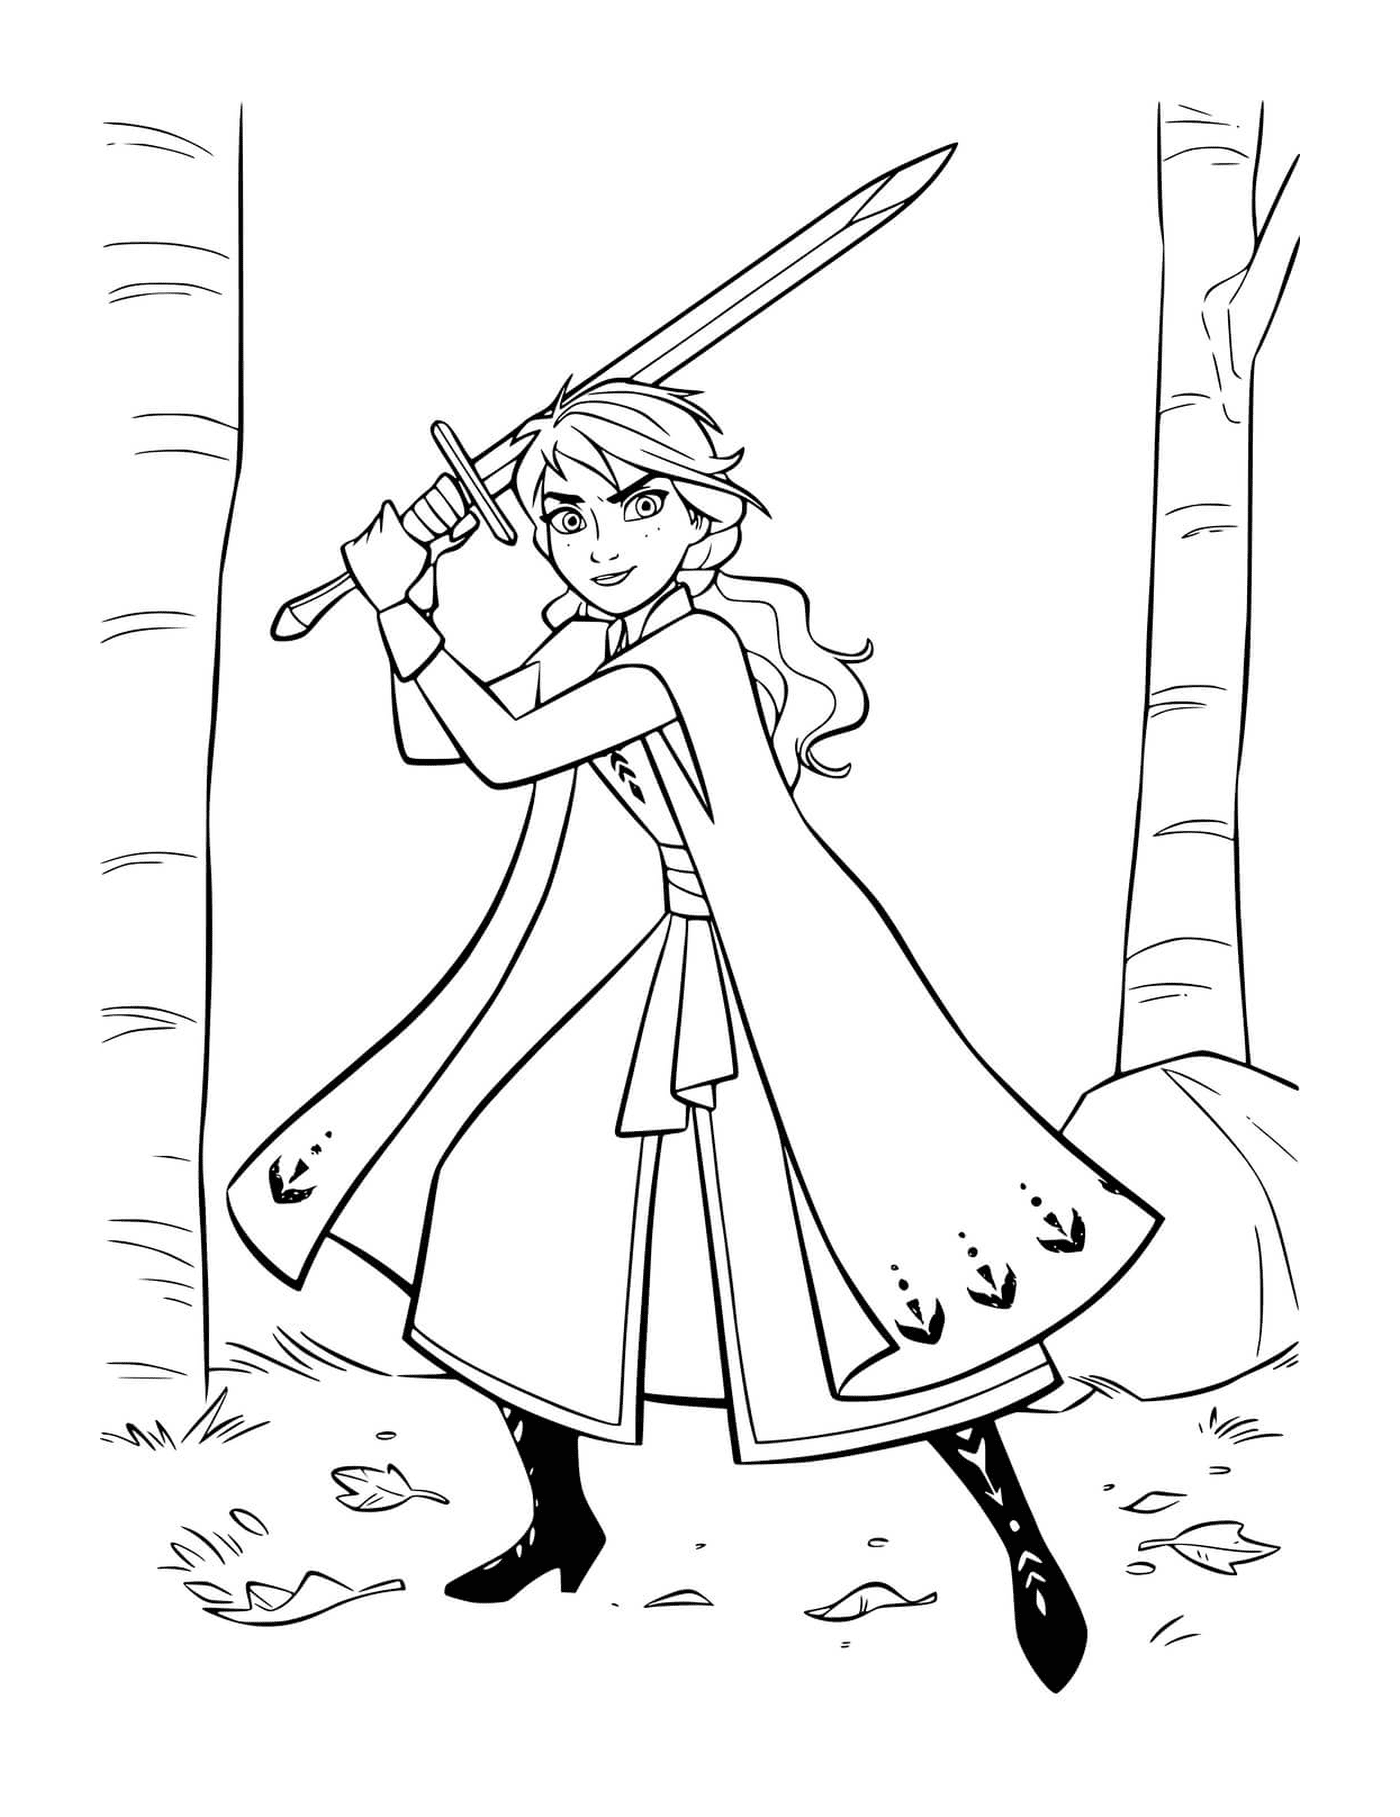  Anna defiende el reino con espada 